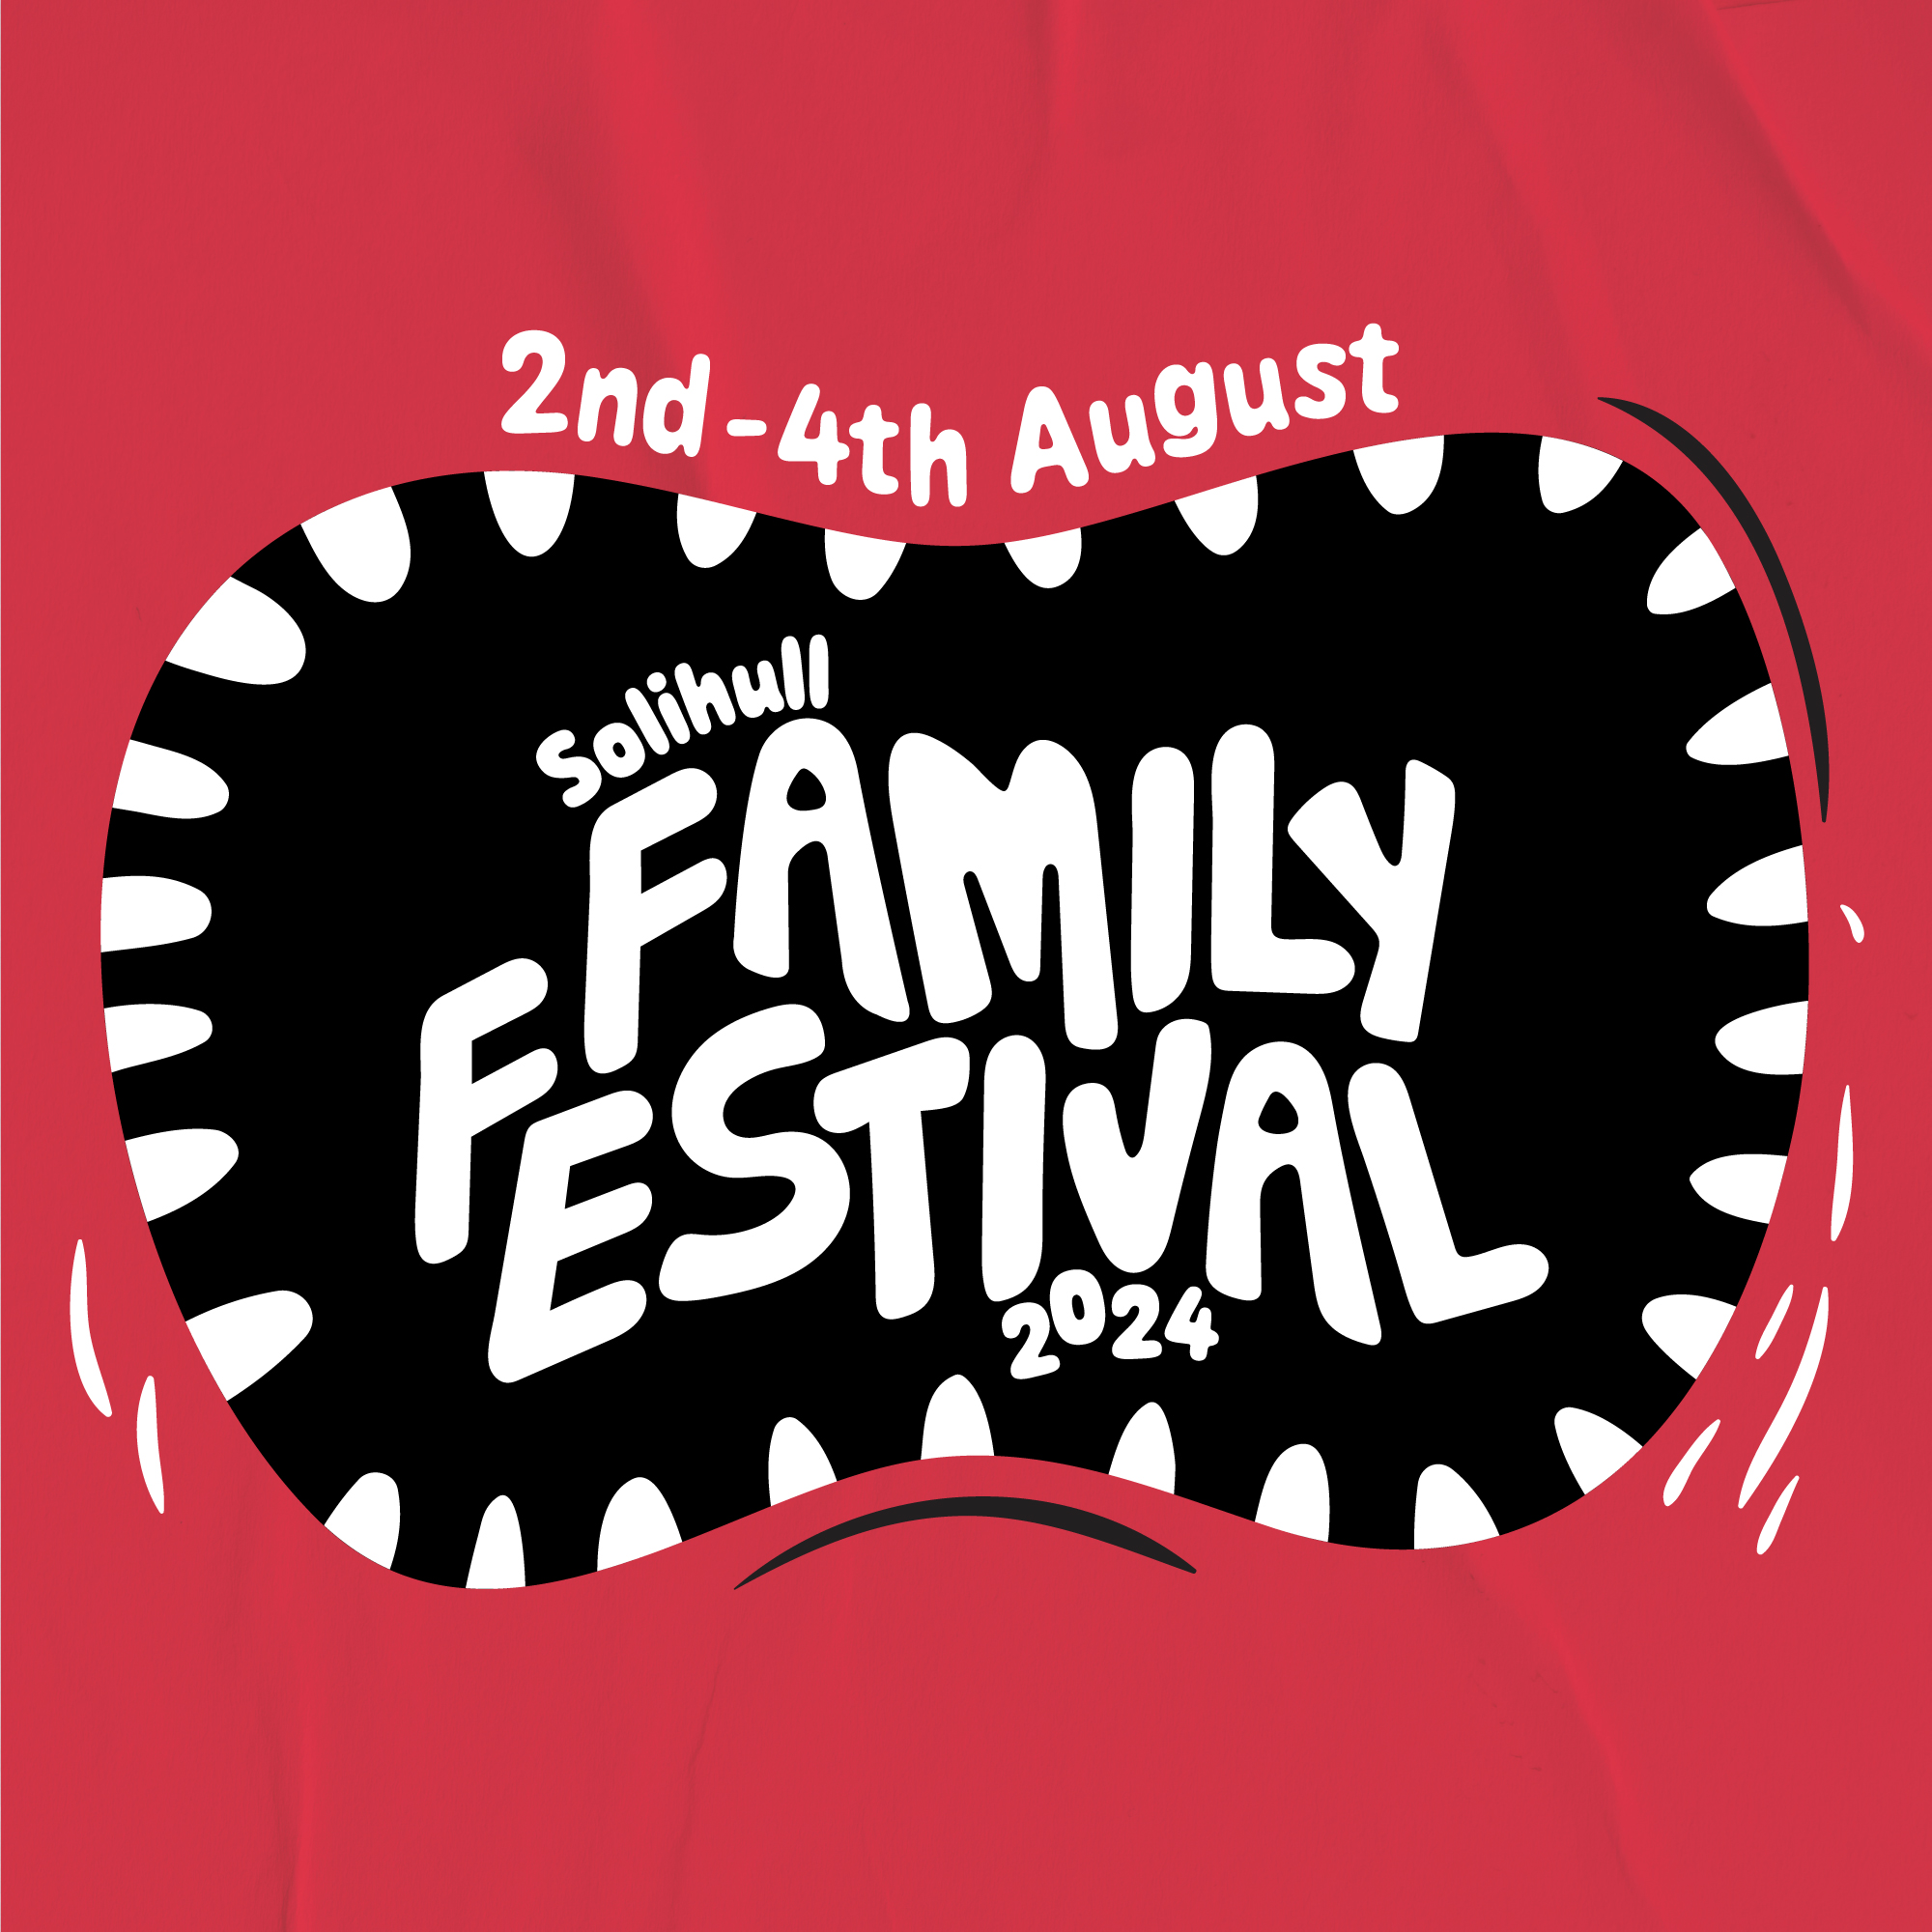 Solihull Family Festival